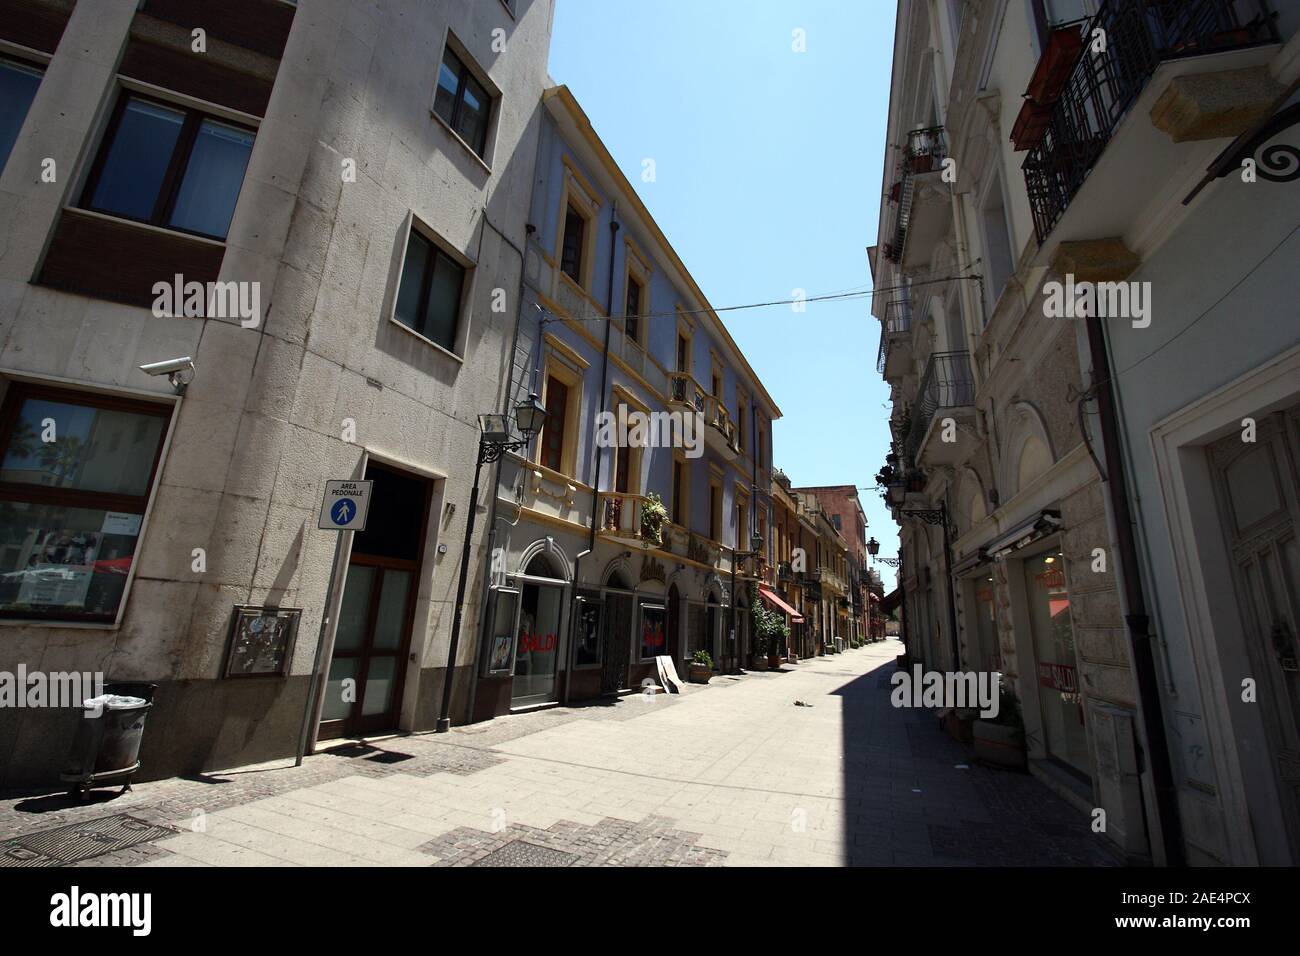 Oristano, Italy - 6 July 2011: The city center Stock Photo